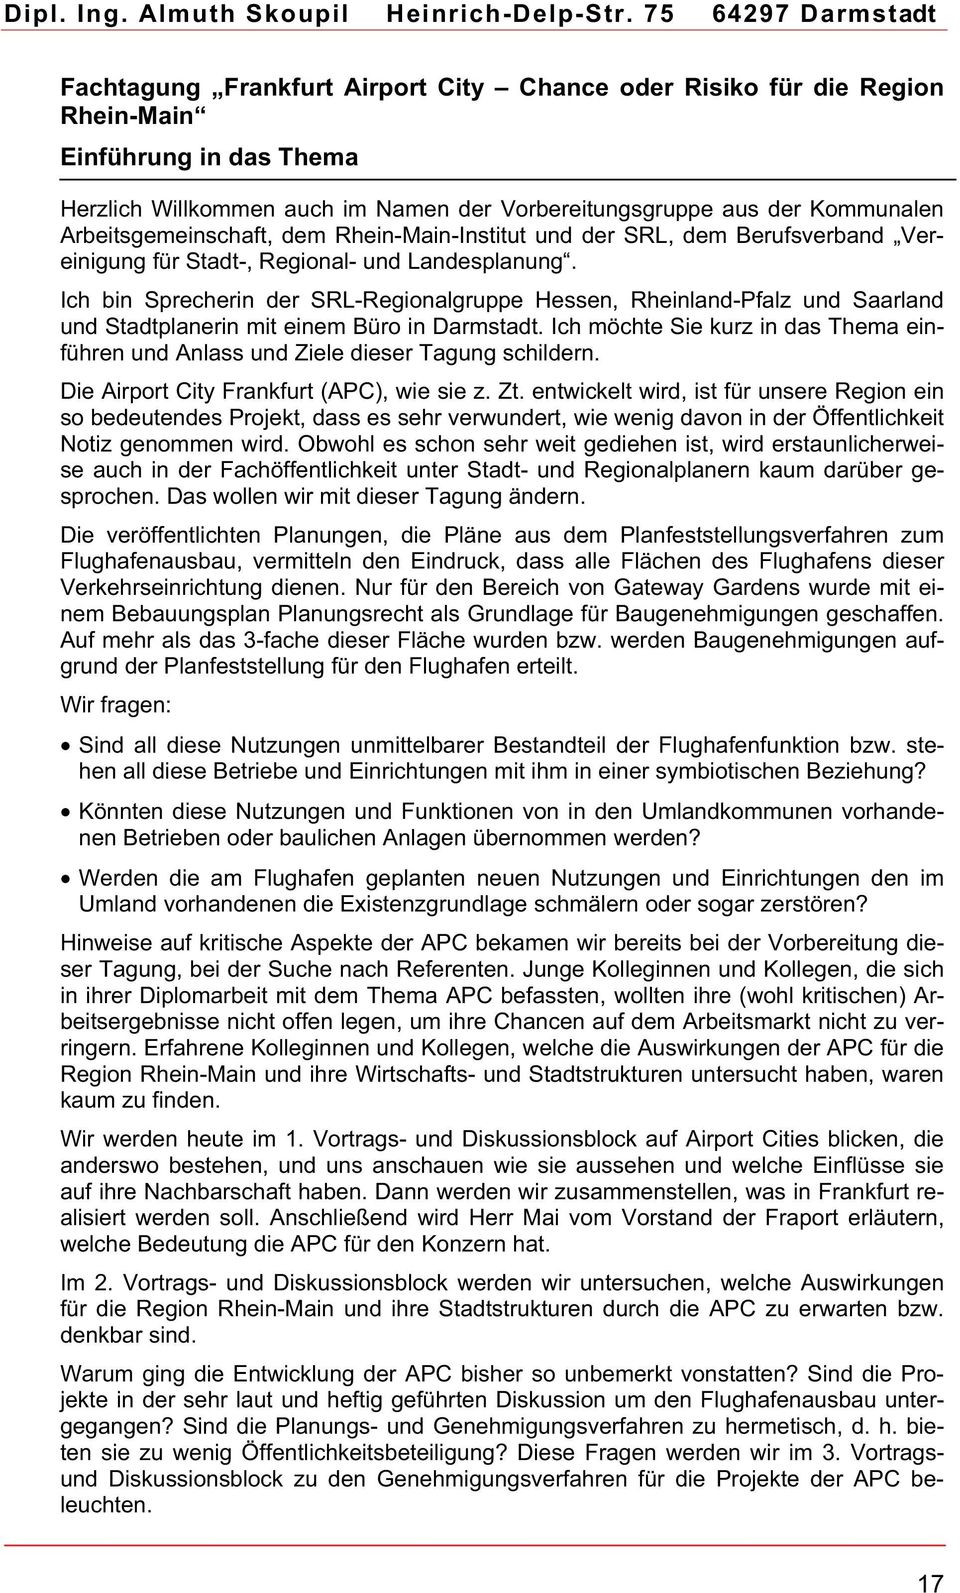 Arbeitsgemeinschaft, dem Rhein-Main-Institut und der SRL, dem Berufsverband Vereinigung für Stadt-, Regional- und Landesplanung.